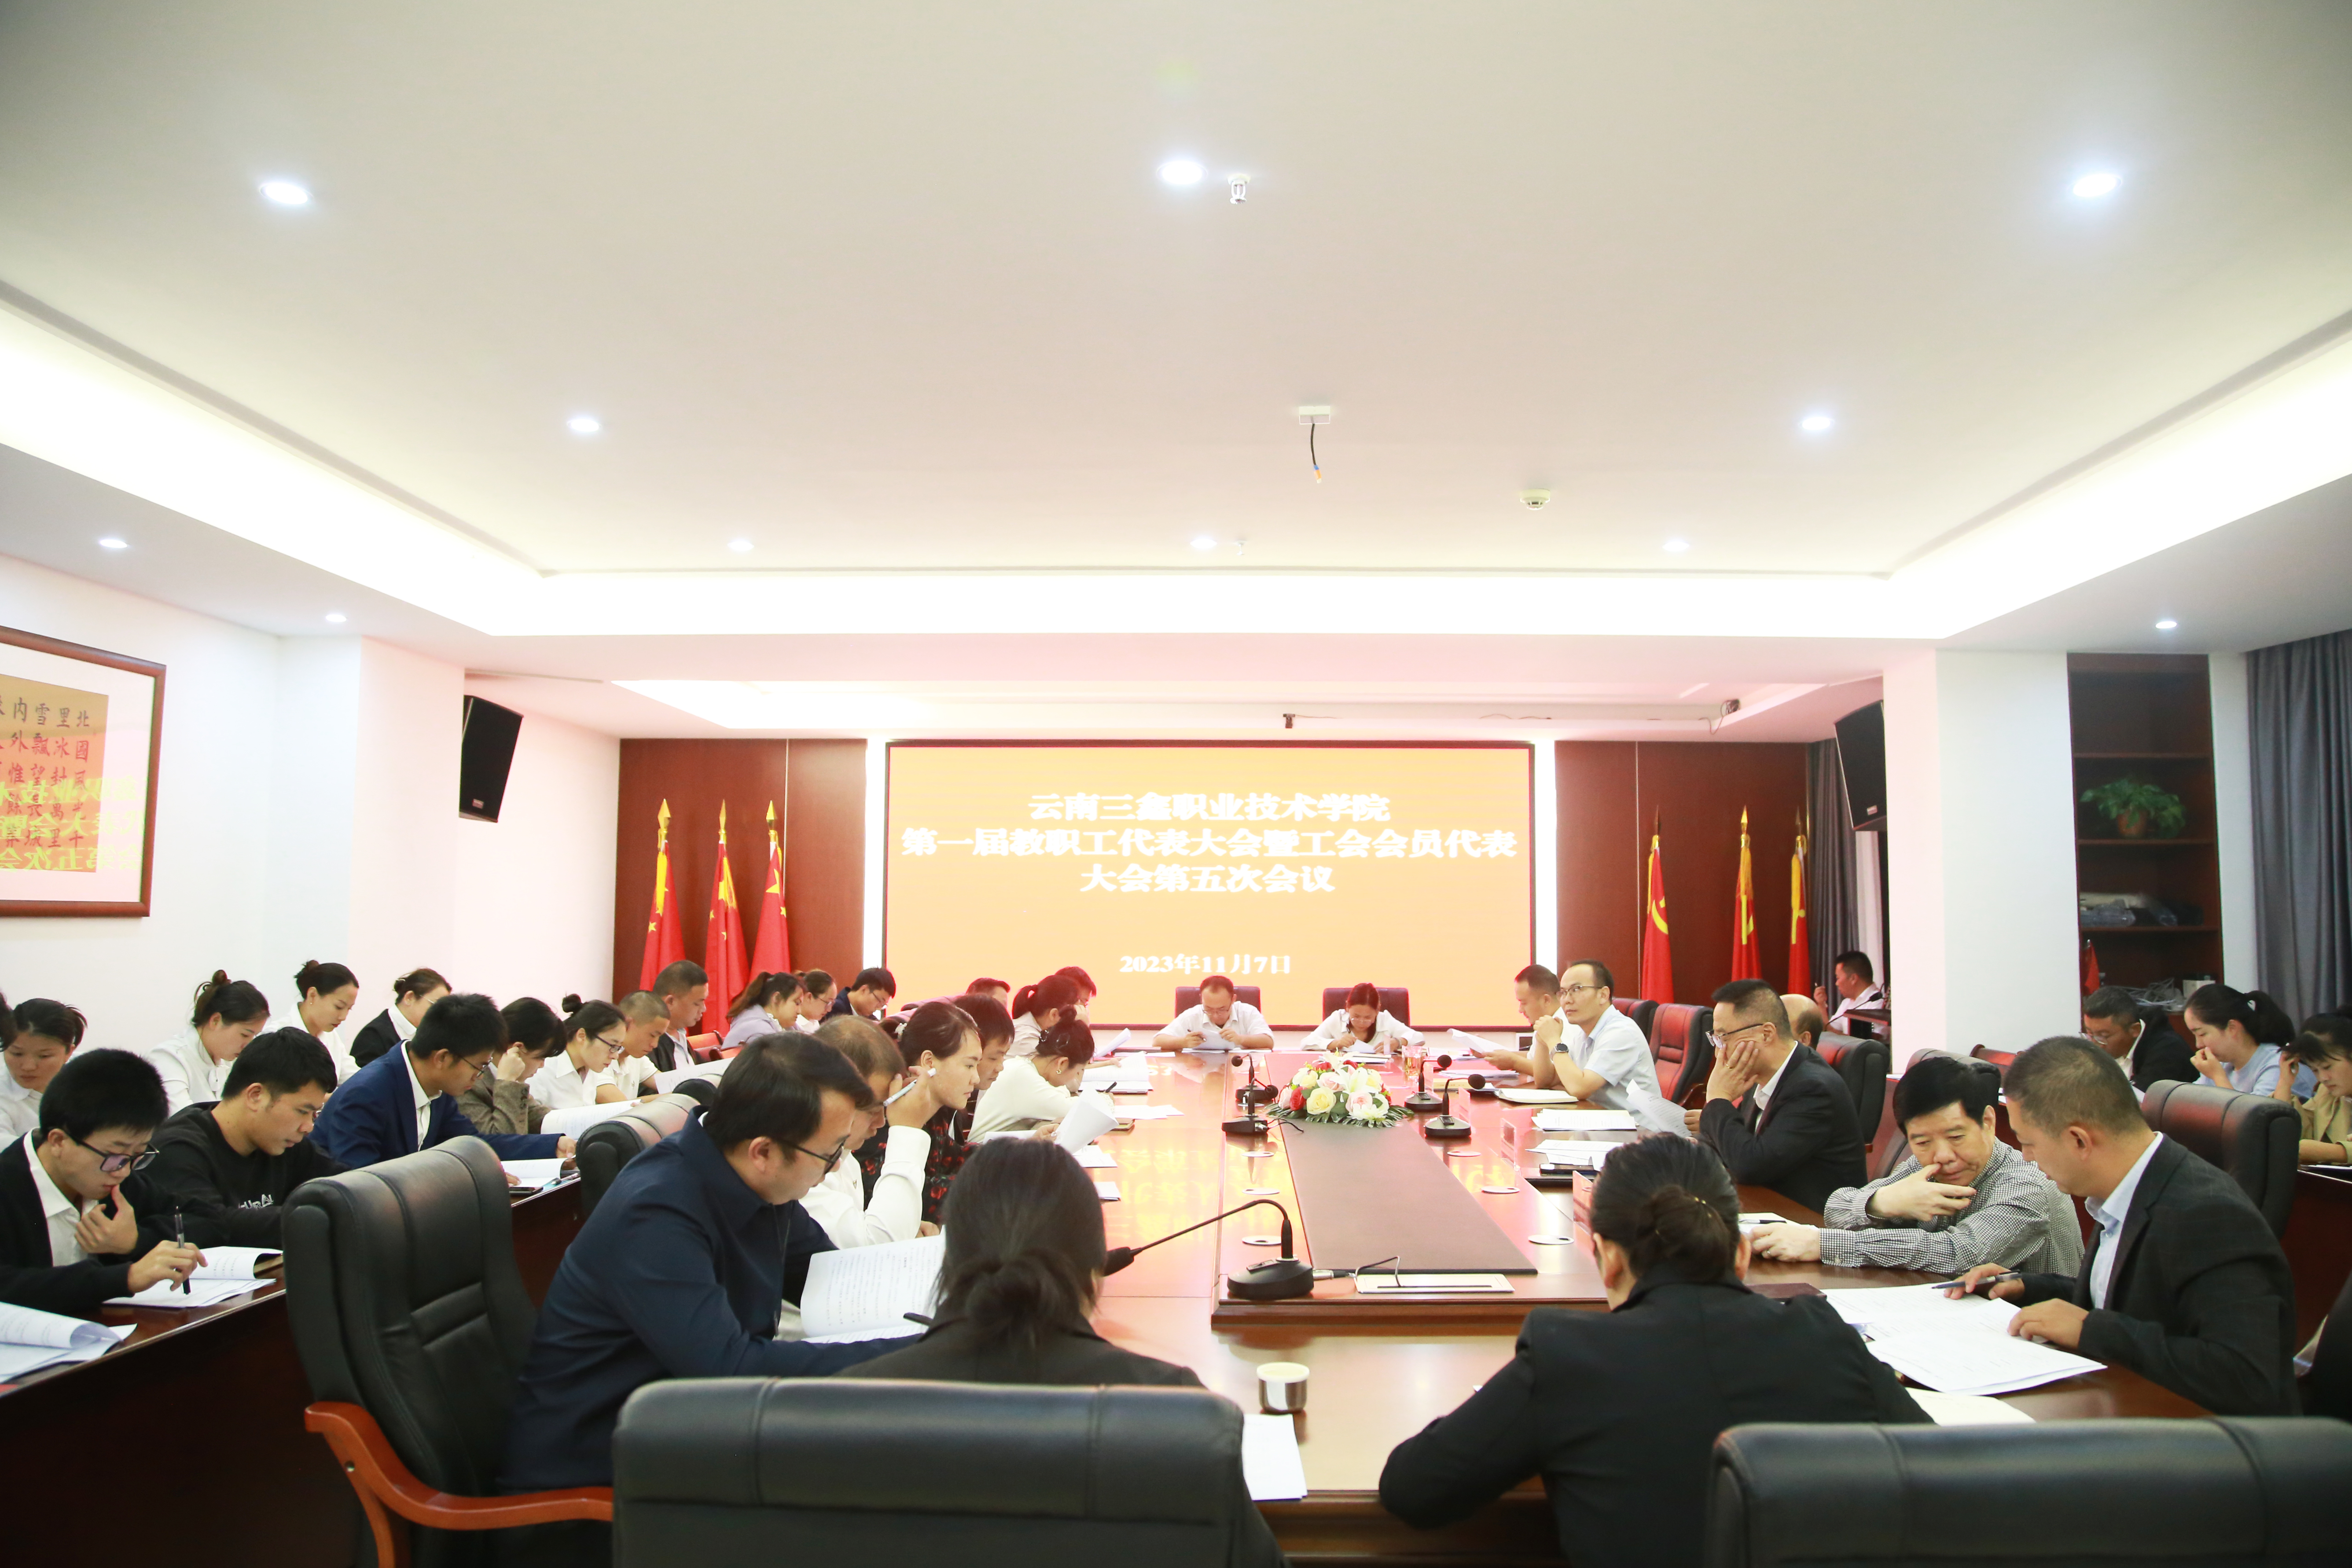 云南三鑫职业技术学院召开第一届教职工代表大会暨工会会员代表大会第五次会议